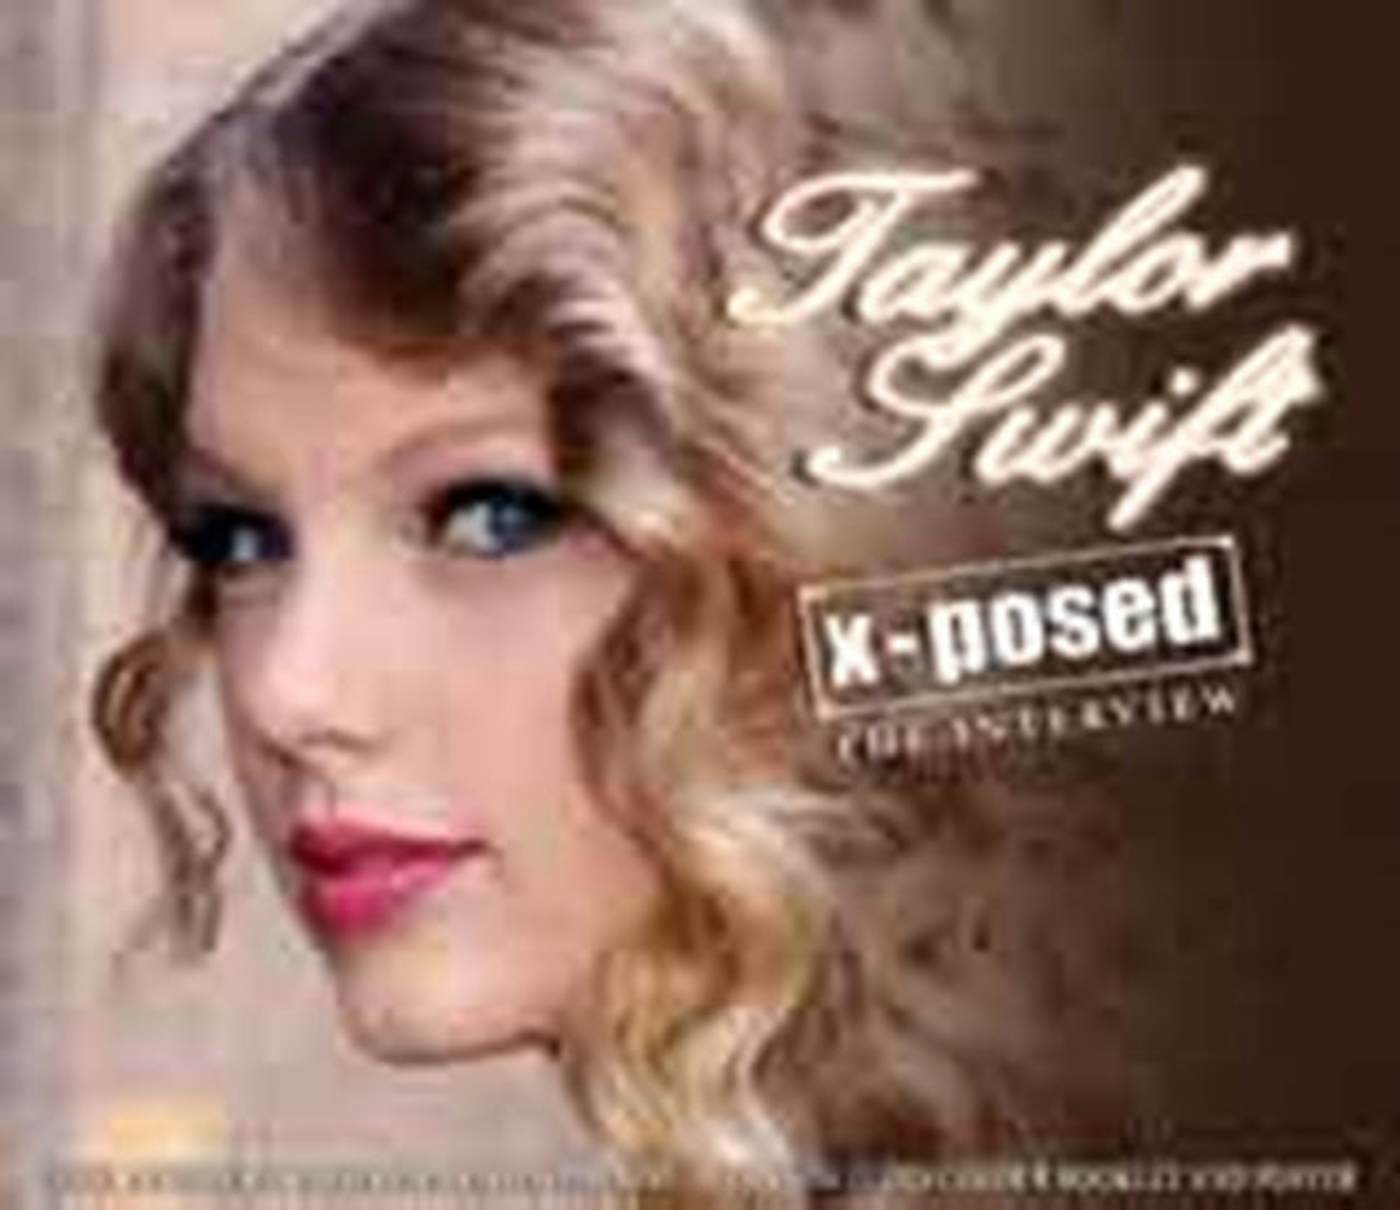 taylor swift cd, taylor swift cd, Taylor